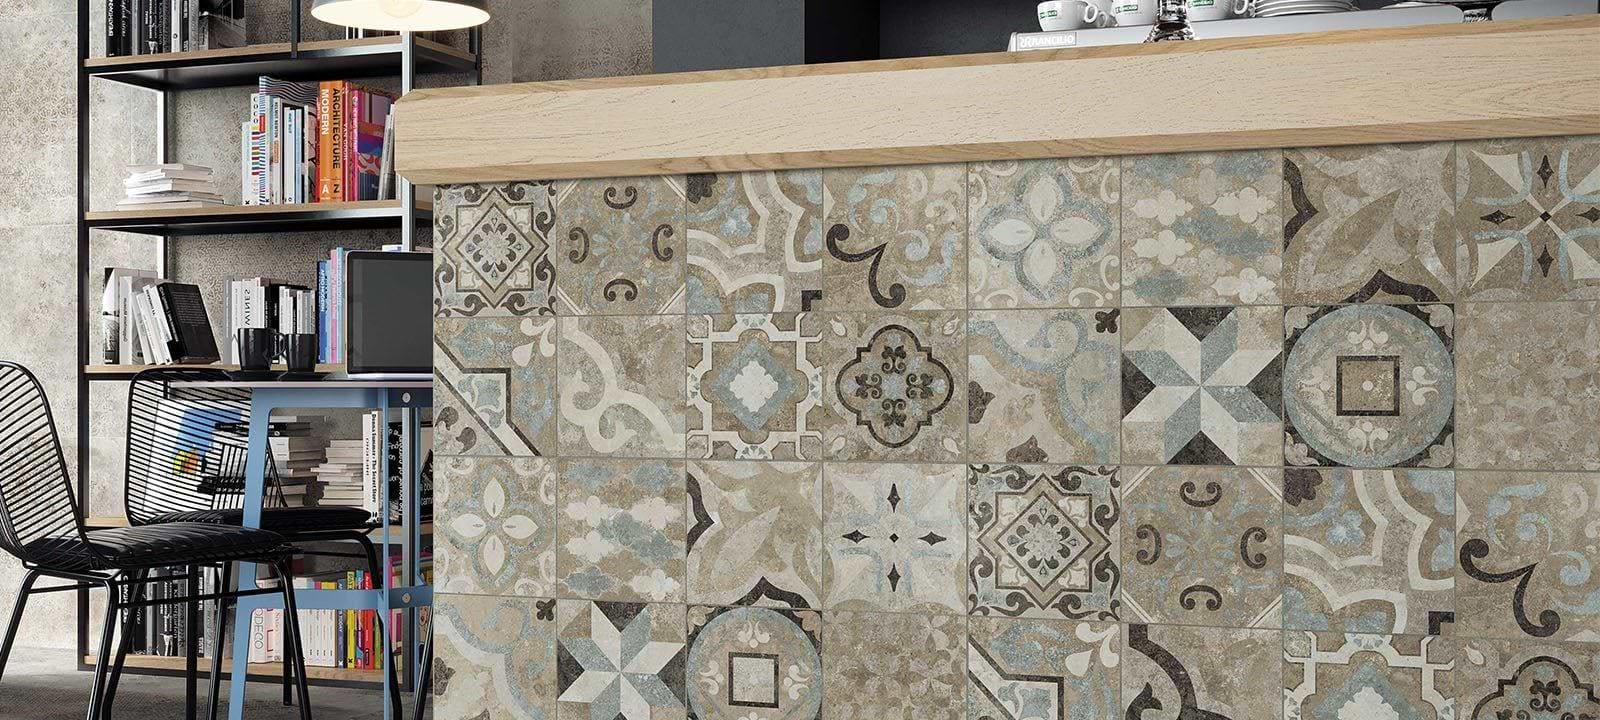 Minoli Wall & Floor Tiles Codec Gray Matt 30 x 60cm